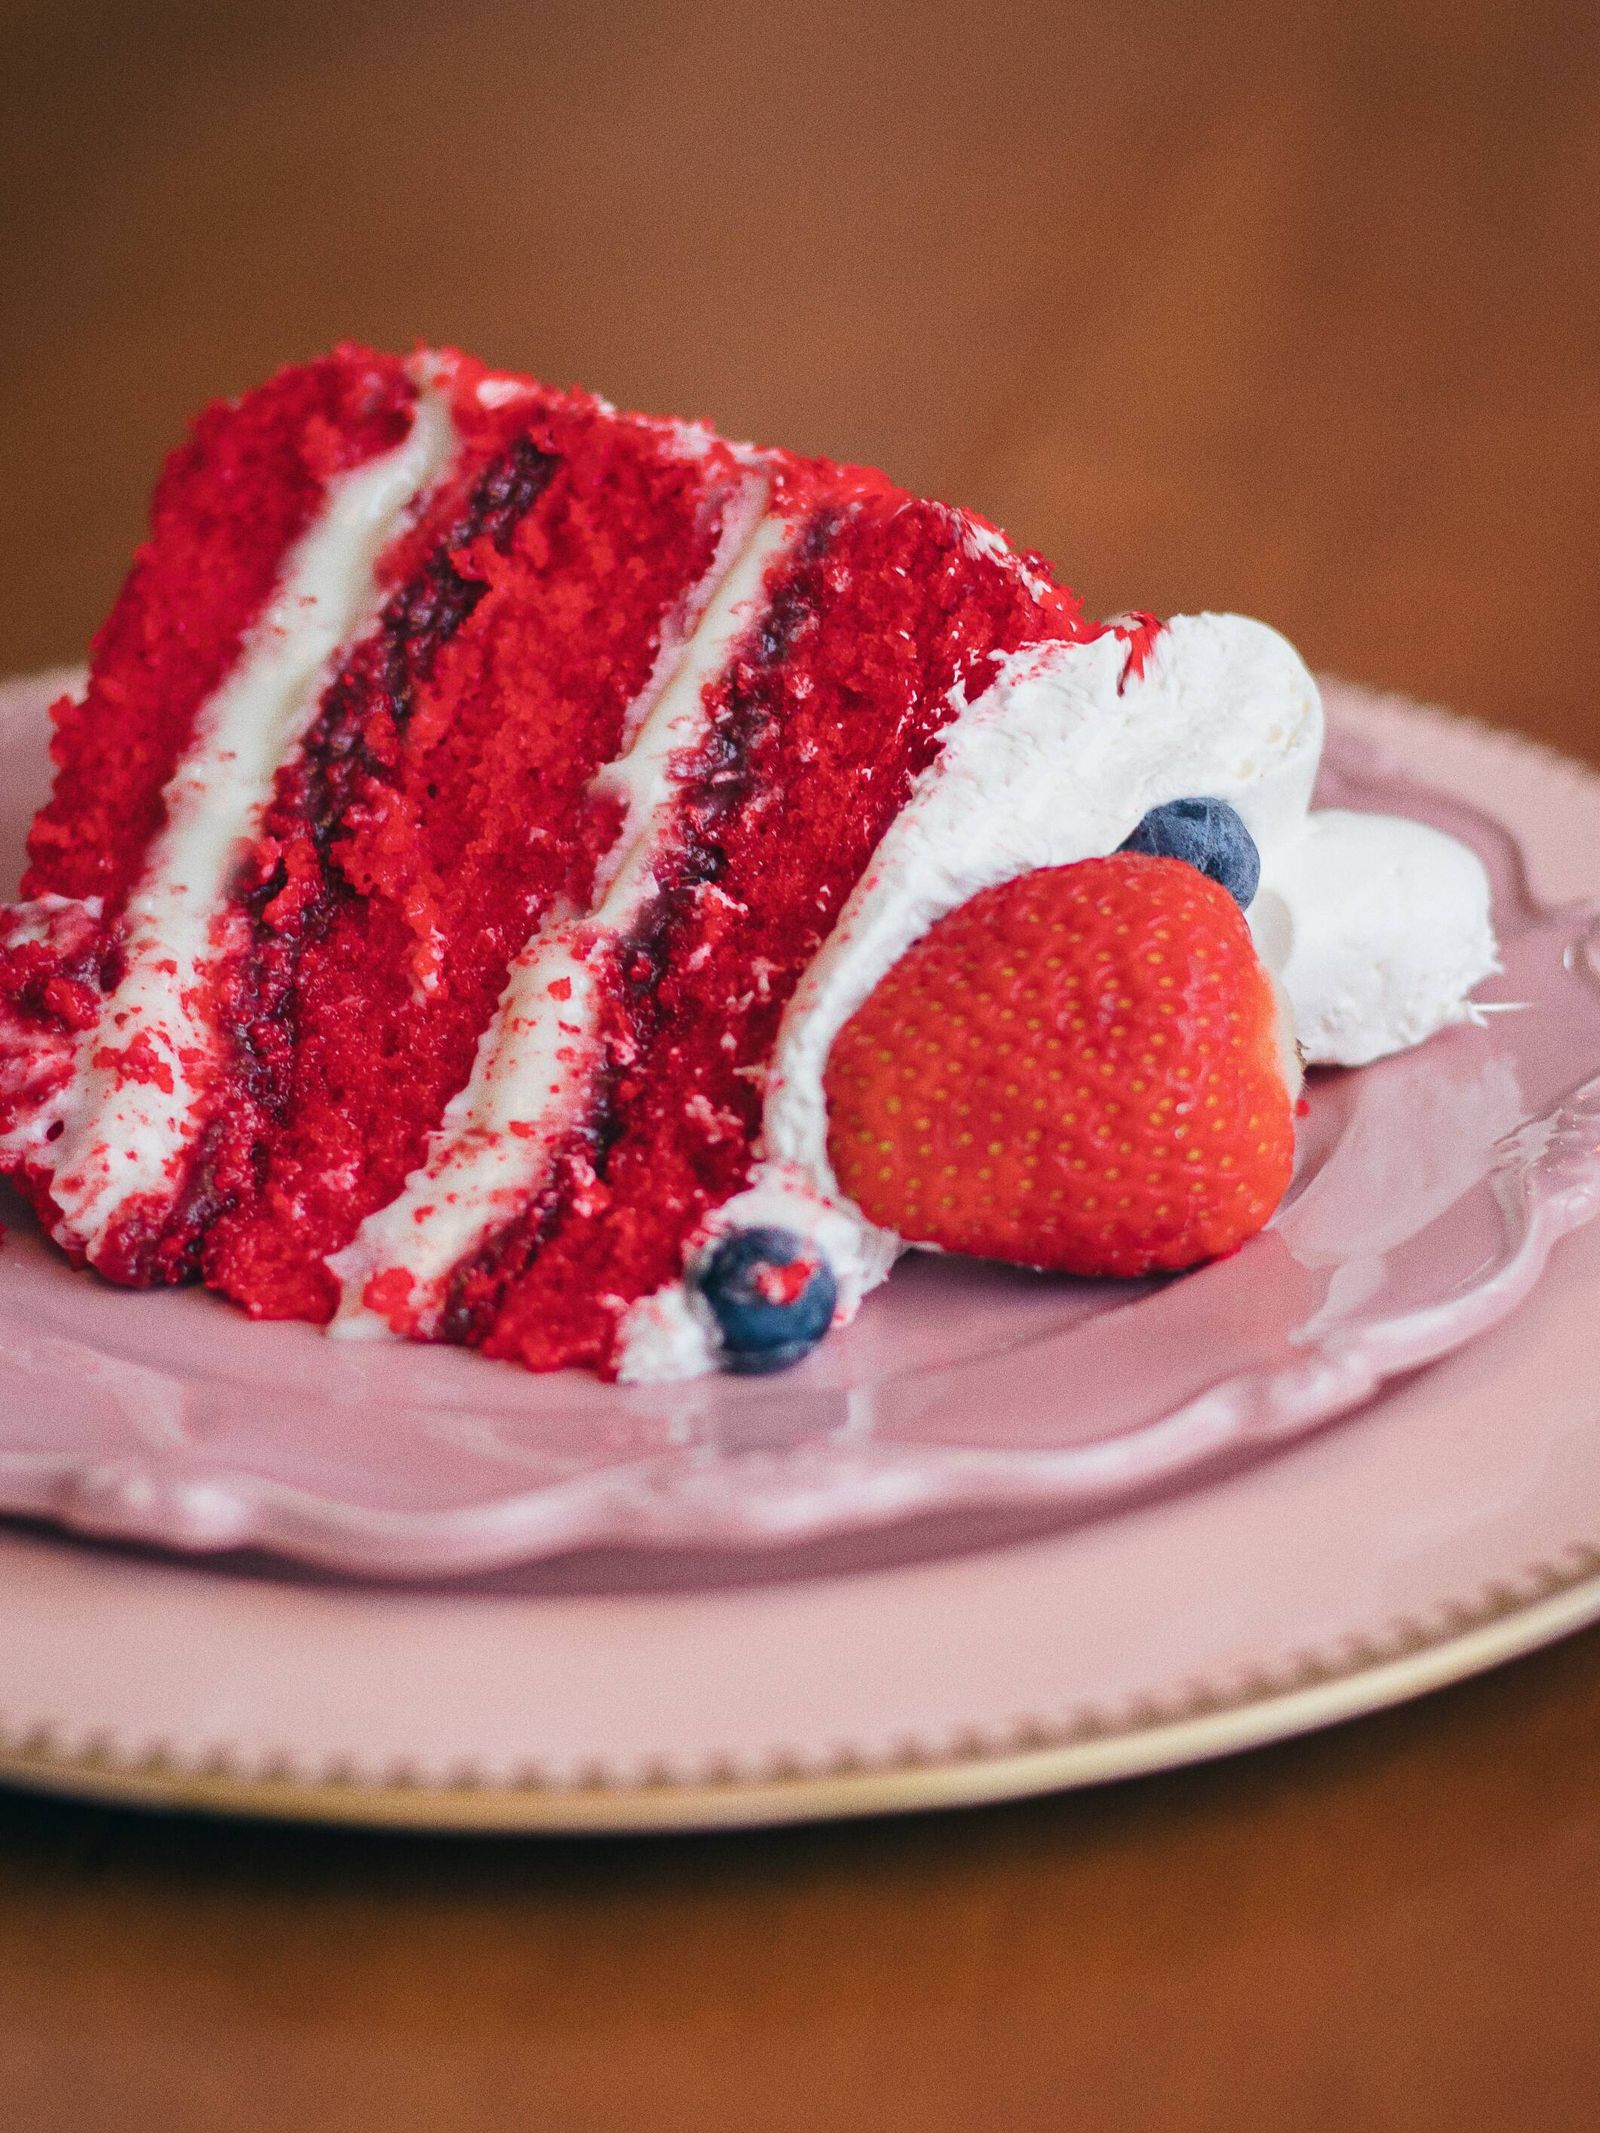 Fragmento de Red Velvet, una de las tartas más conocidas del mundo.  (Pexels/Geovane Souza)